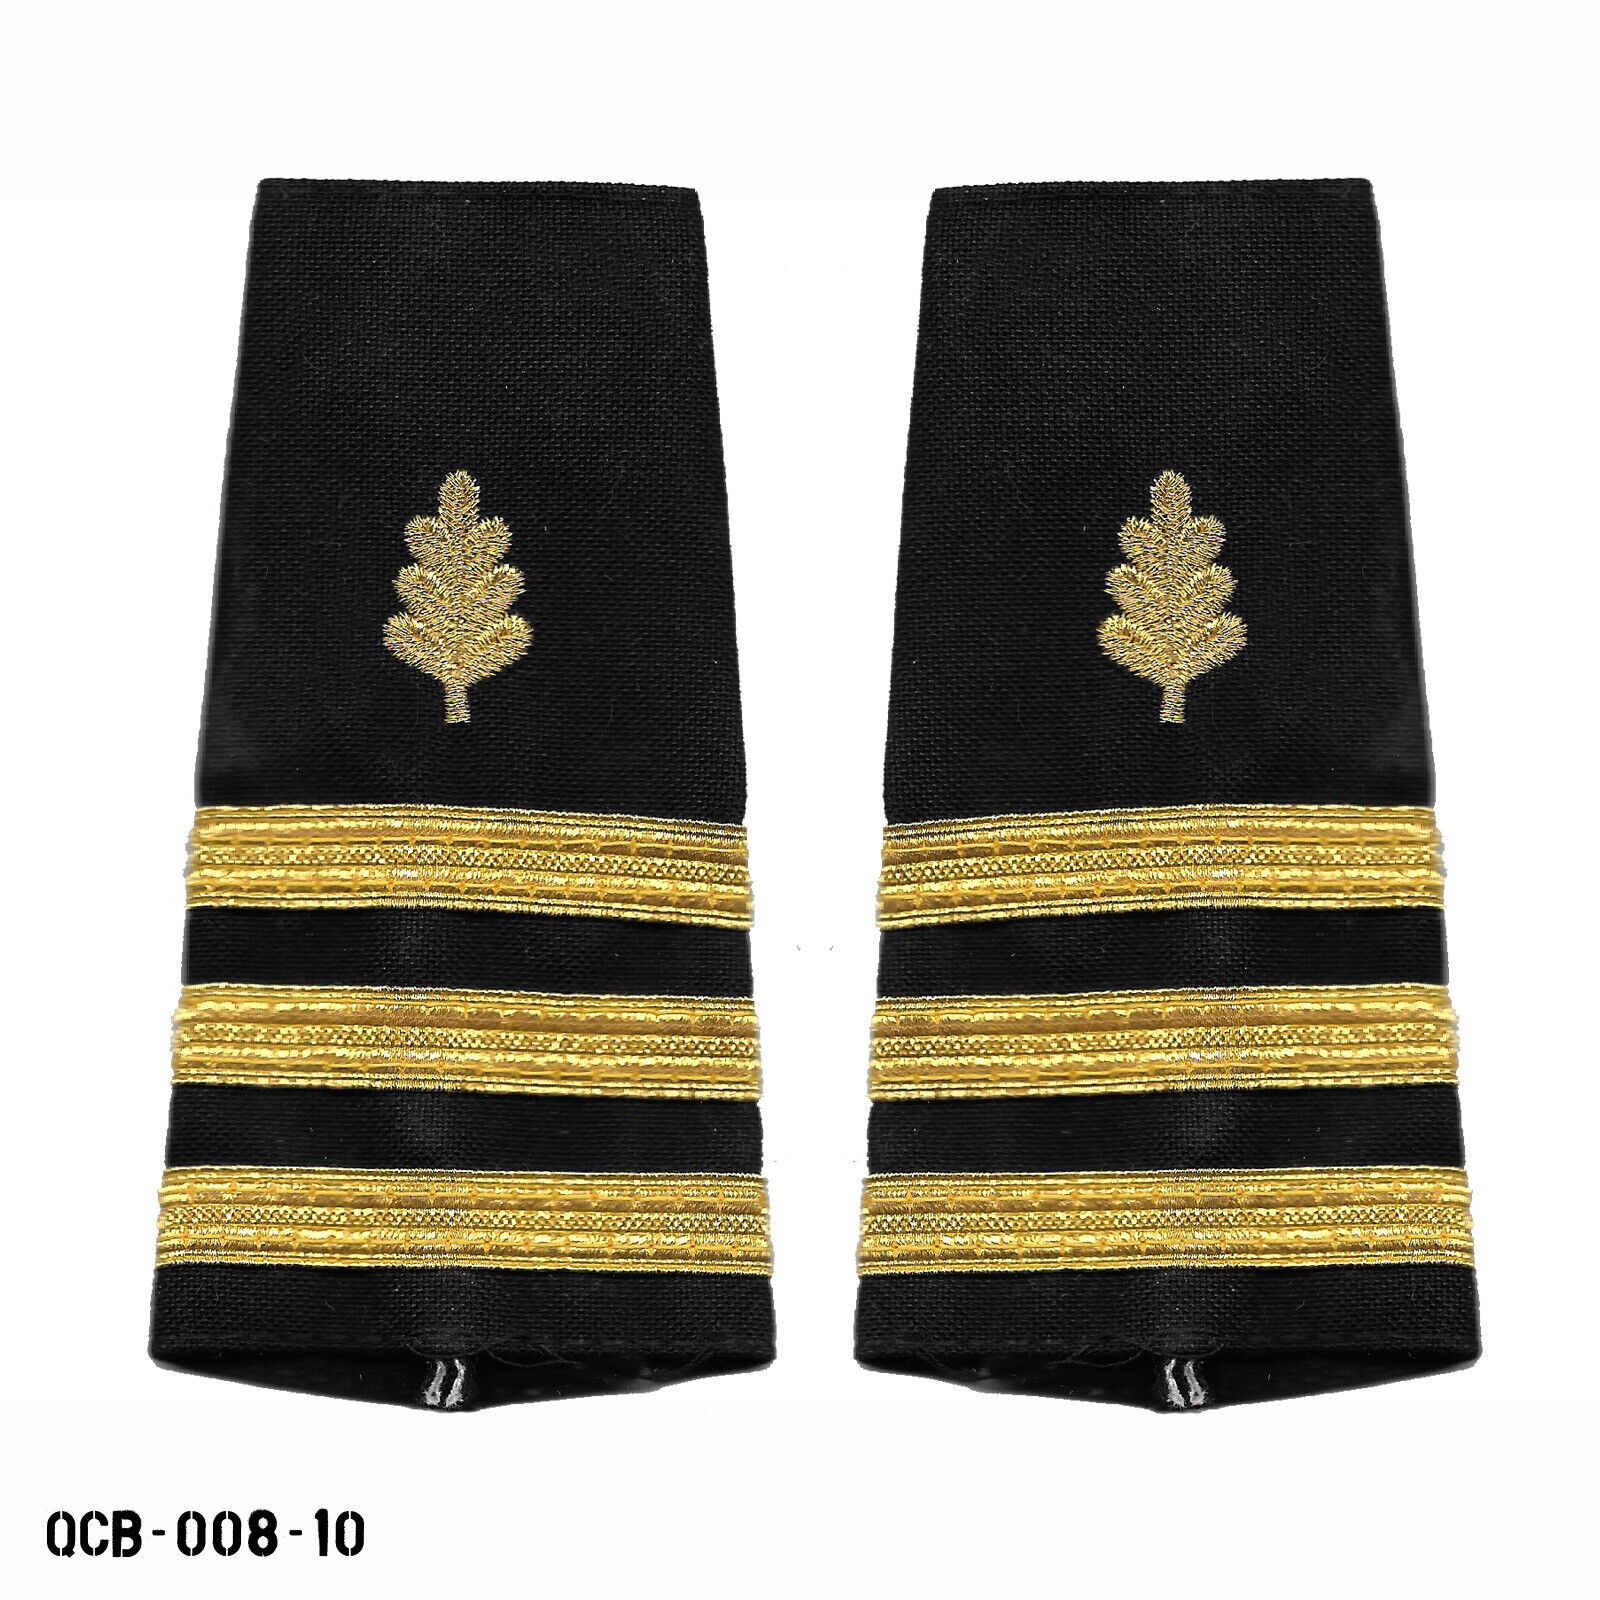 PAIR USN US Navy CDR O5 Commander Nurse Corps Shoulder Marks ~ Rank Slides